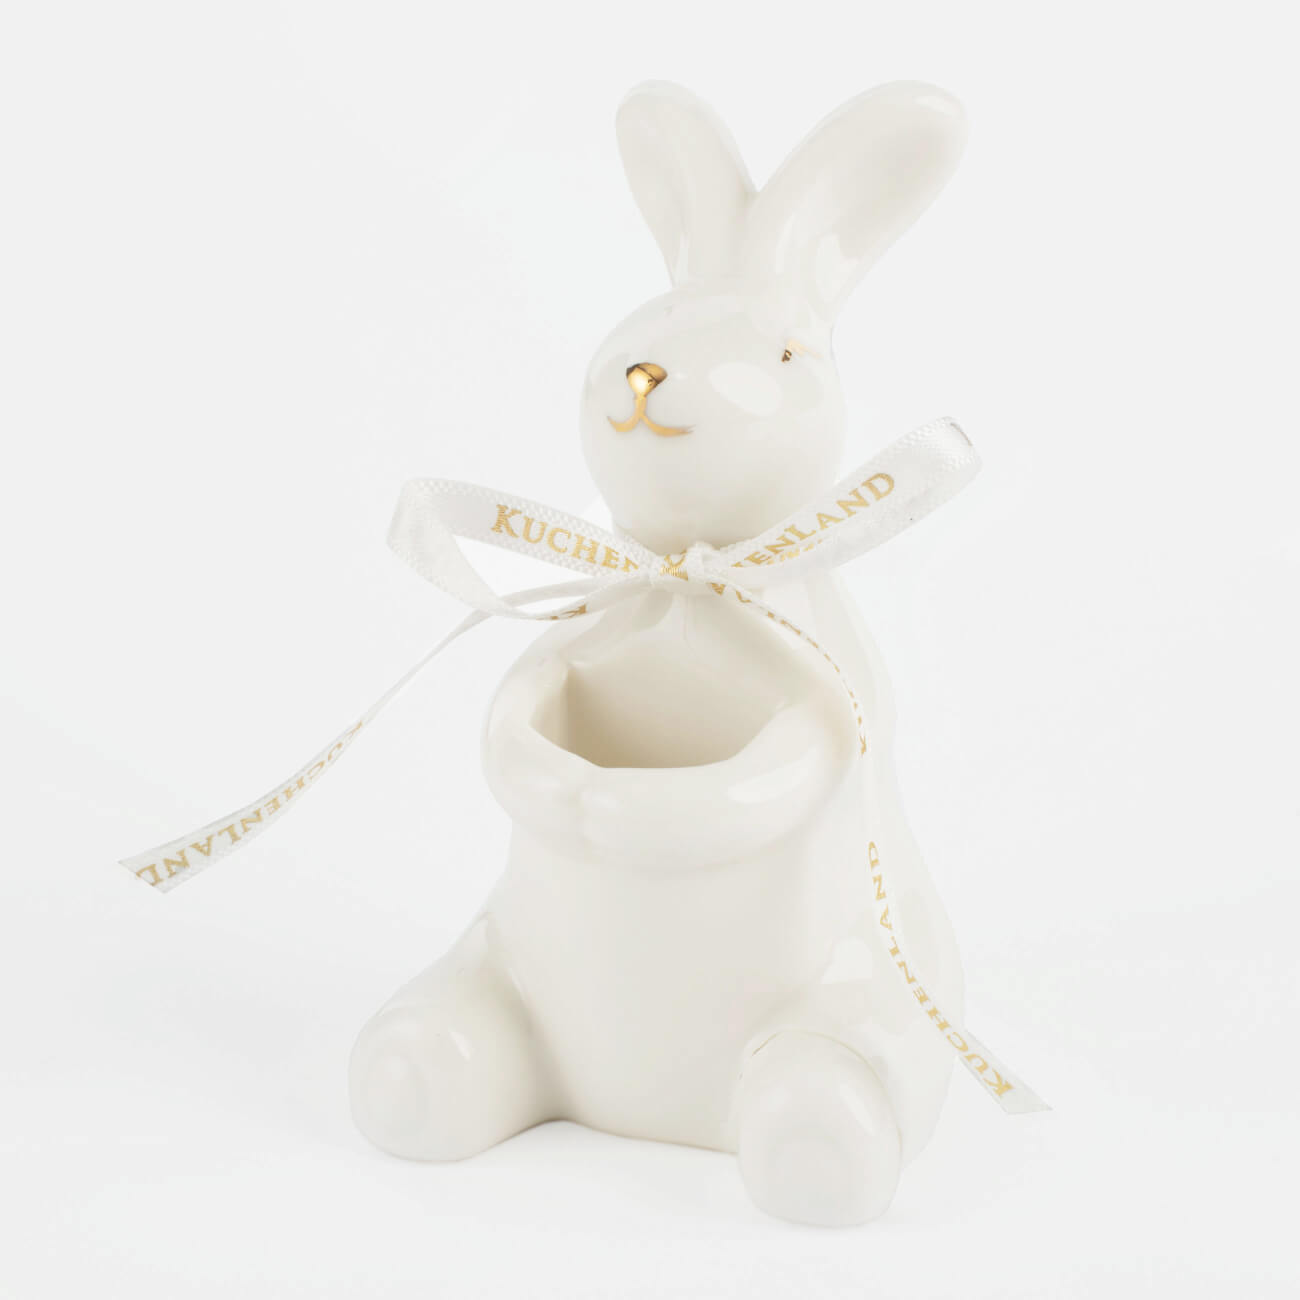 Подставка для зубочисток, 10 см, фарфор P, бело-золотистая, Кролик, Easter gold подставка для зубочисток с магнитом